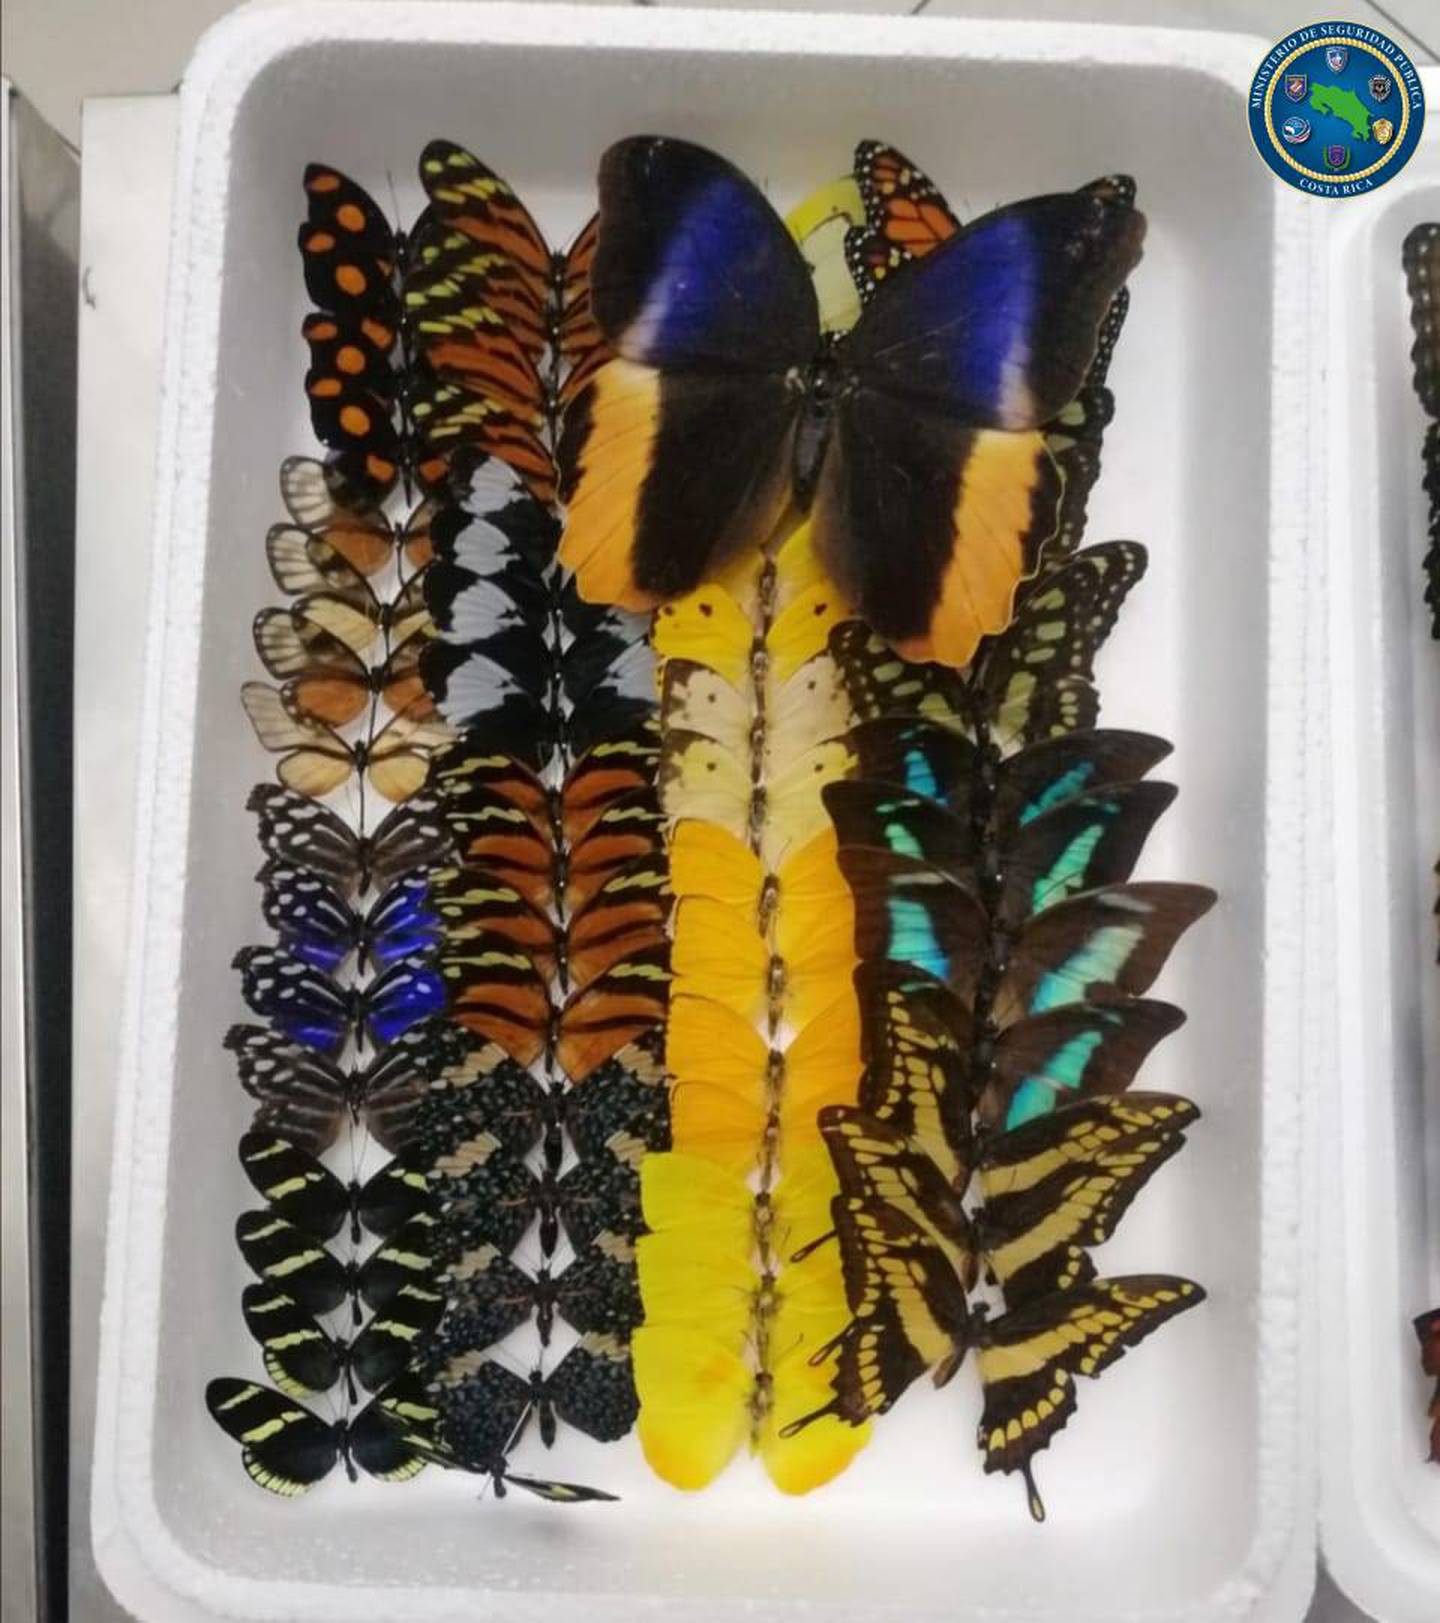 Estas mariposas son parte del más reciente decomiso realizado en el aeropuerto Juan Santamaría el 14 de julio. Foto: Cortesía MSP.